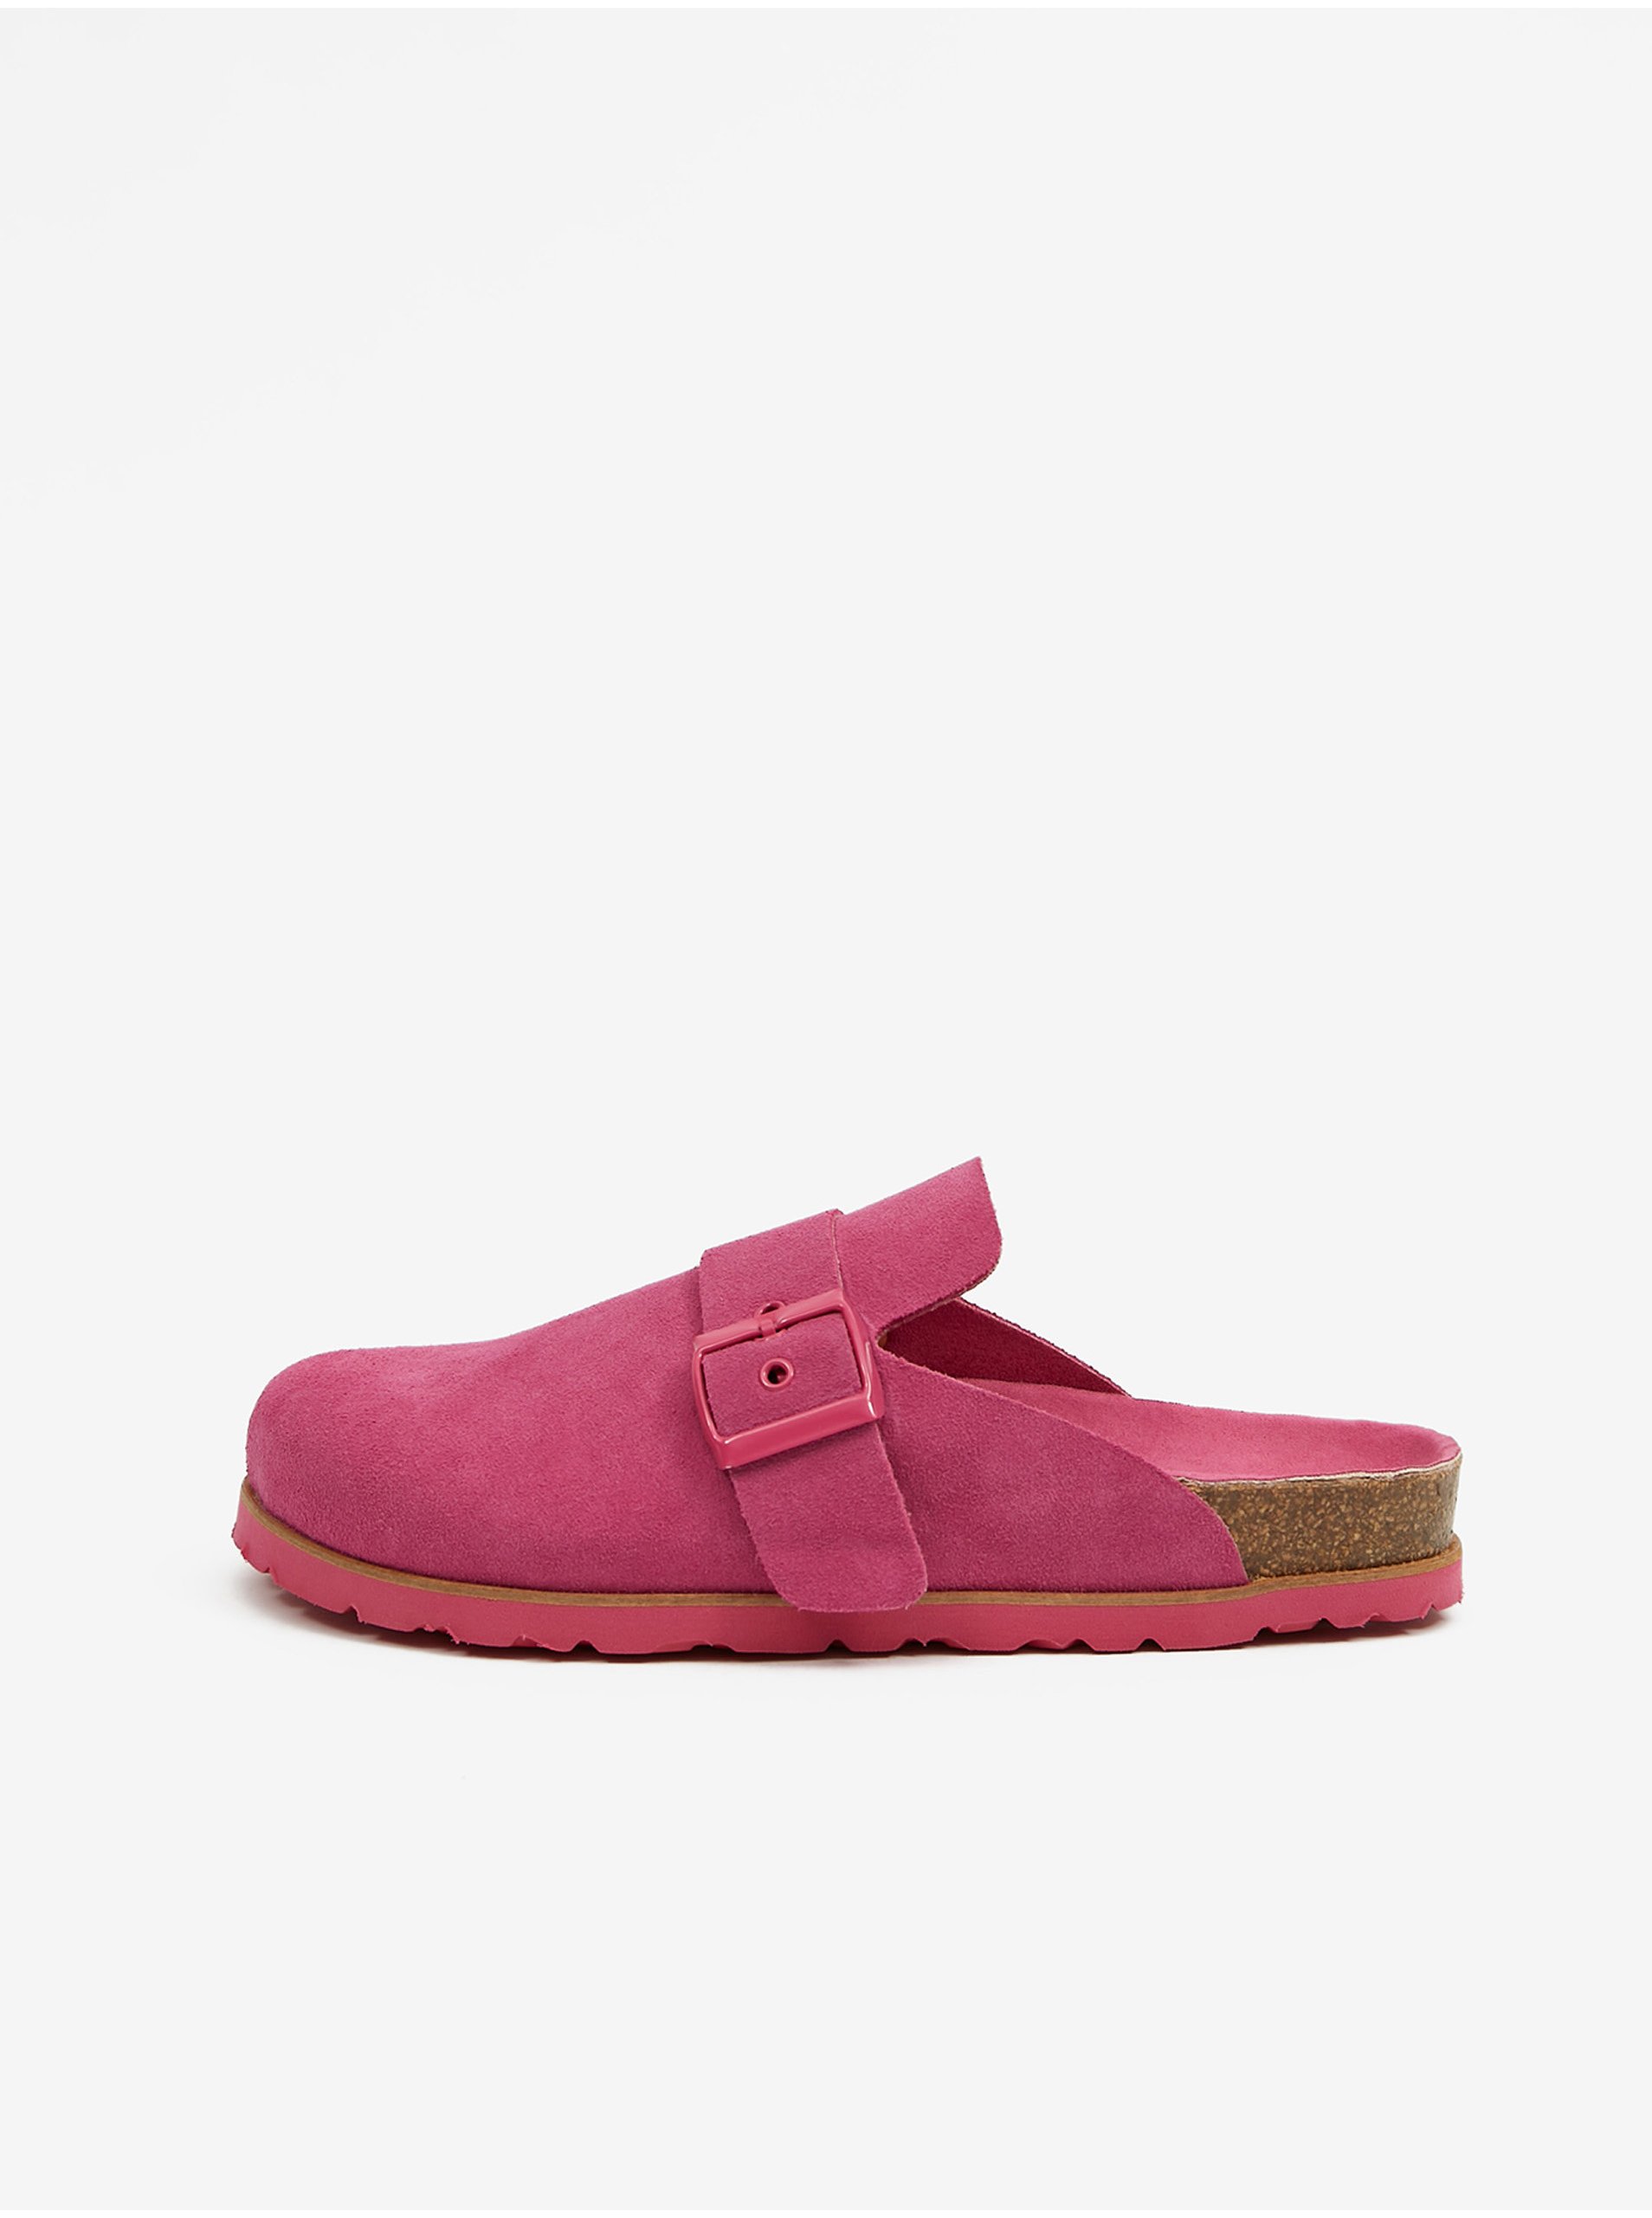 E-shop Tmavě růžové dámské semišové pantofle OJJU